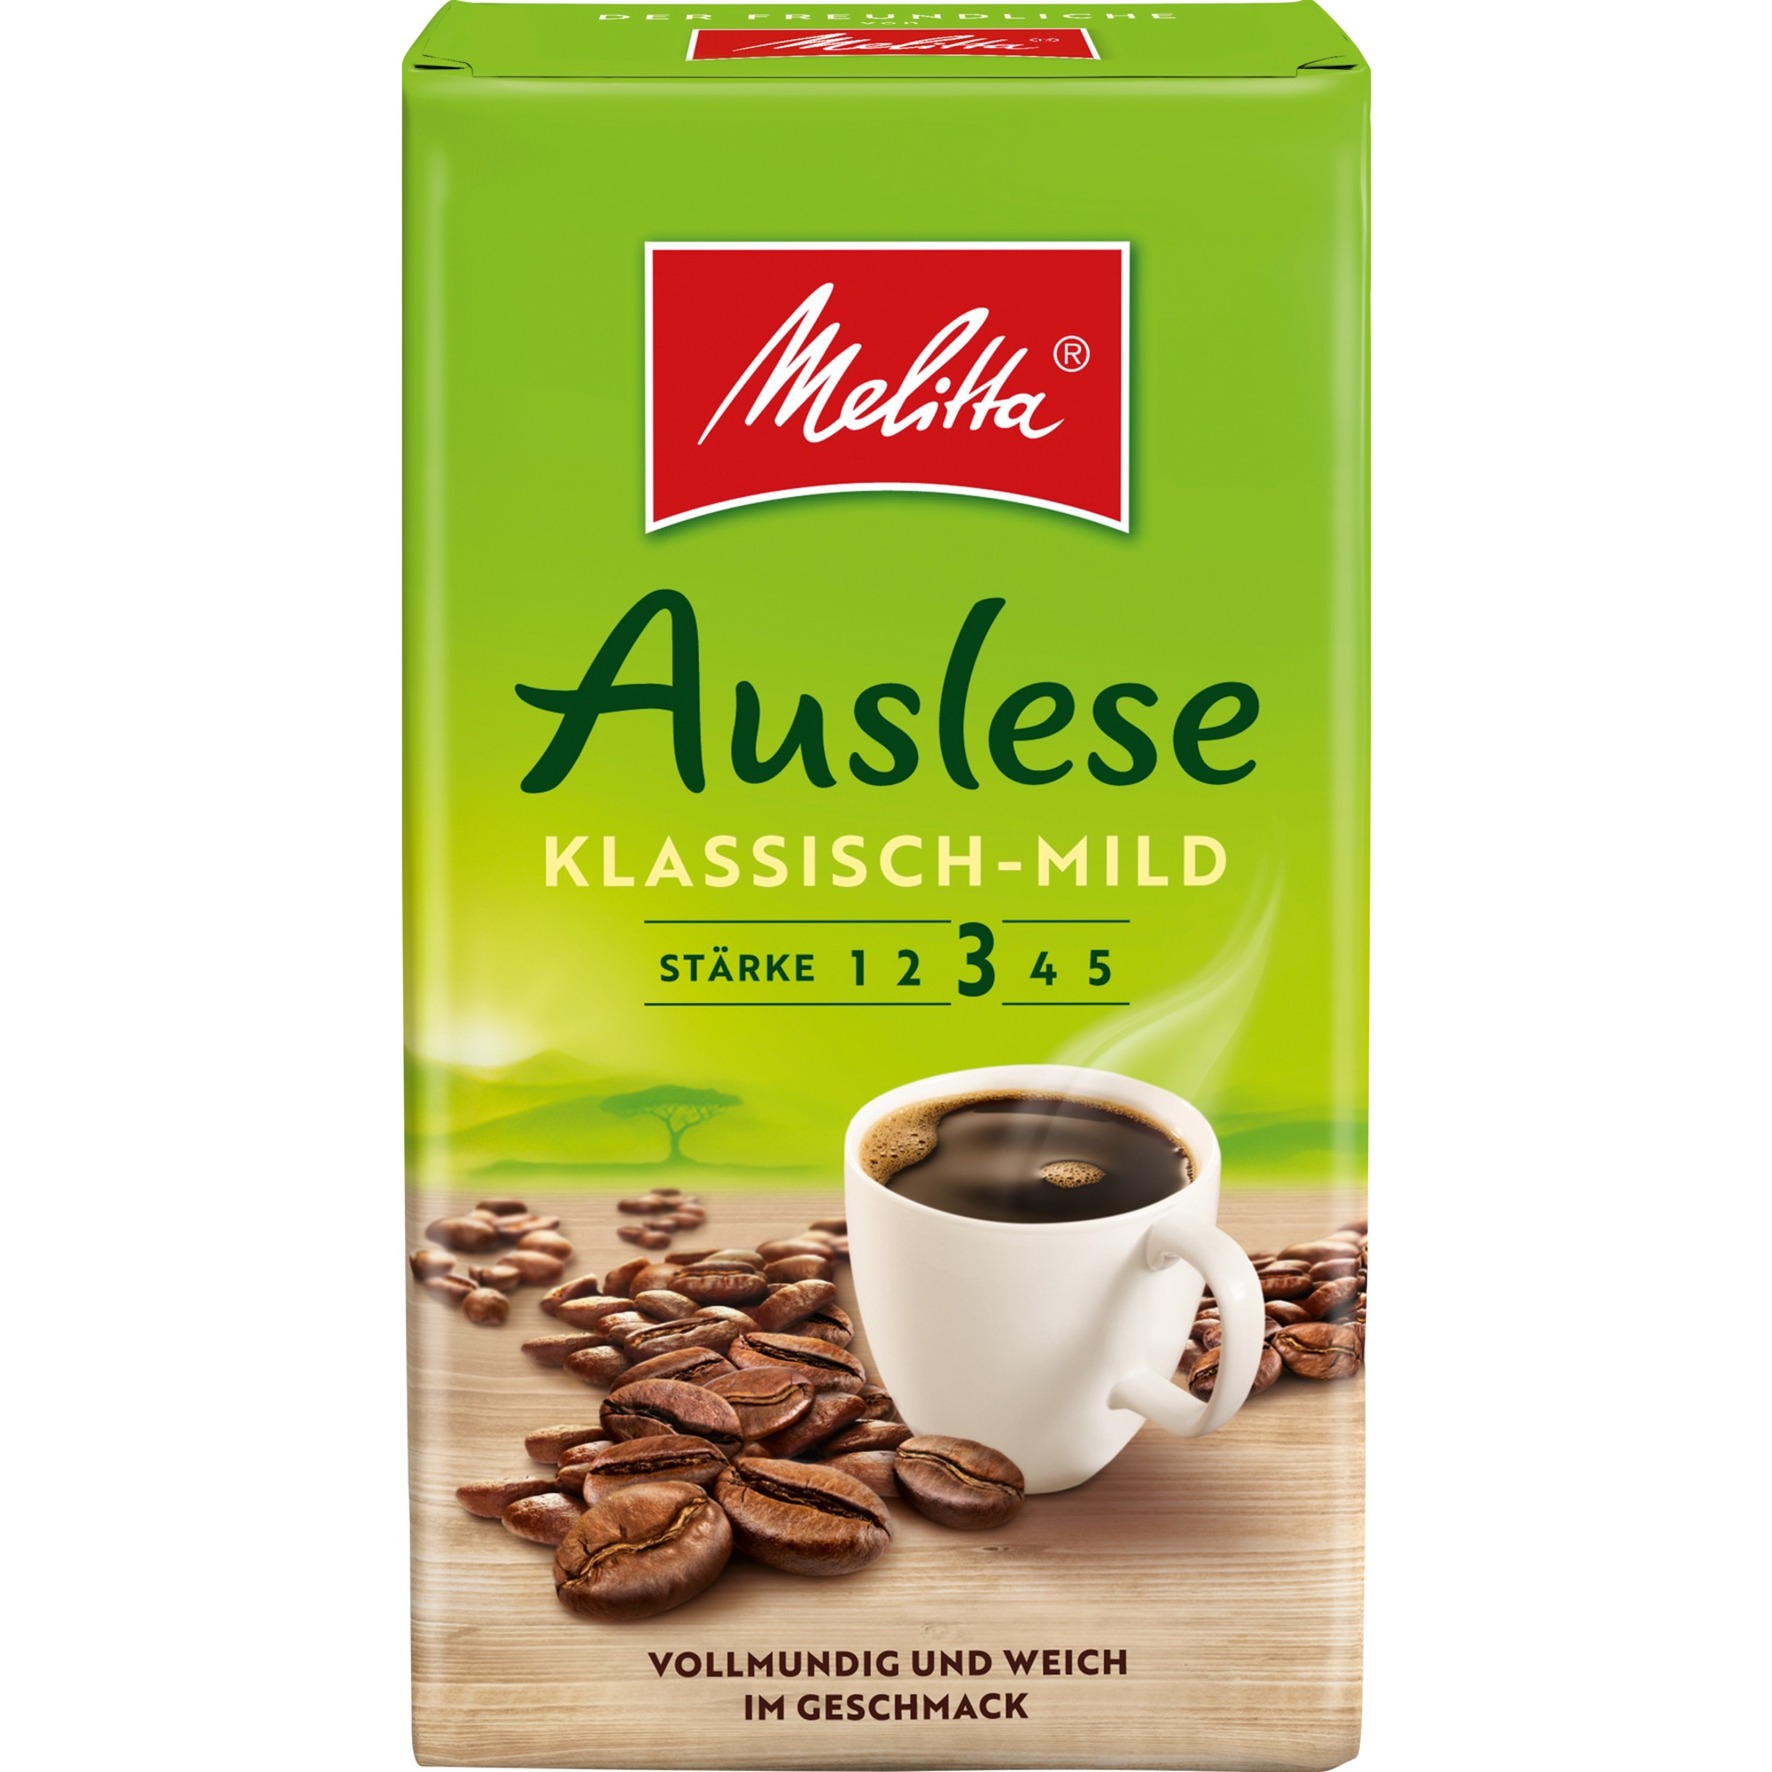 Auslese Klassisch-mild gemahlen, Kaffee von Melitta